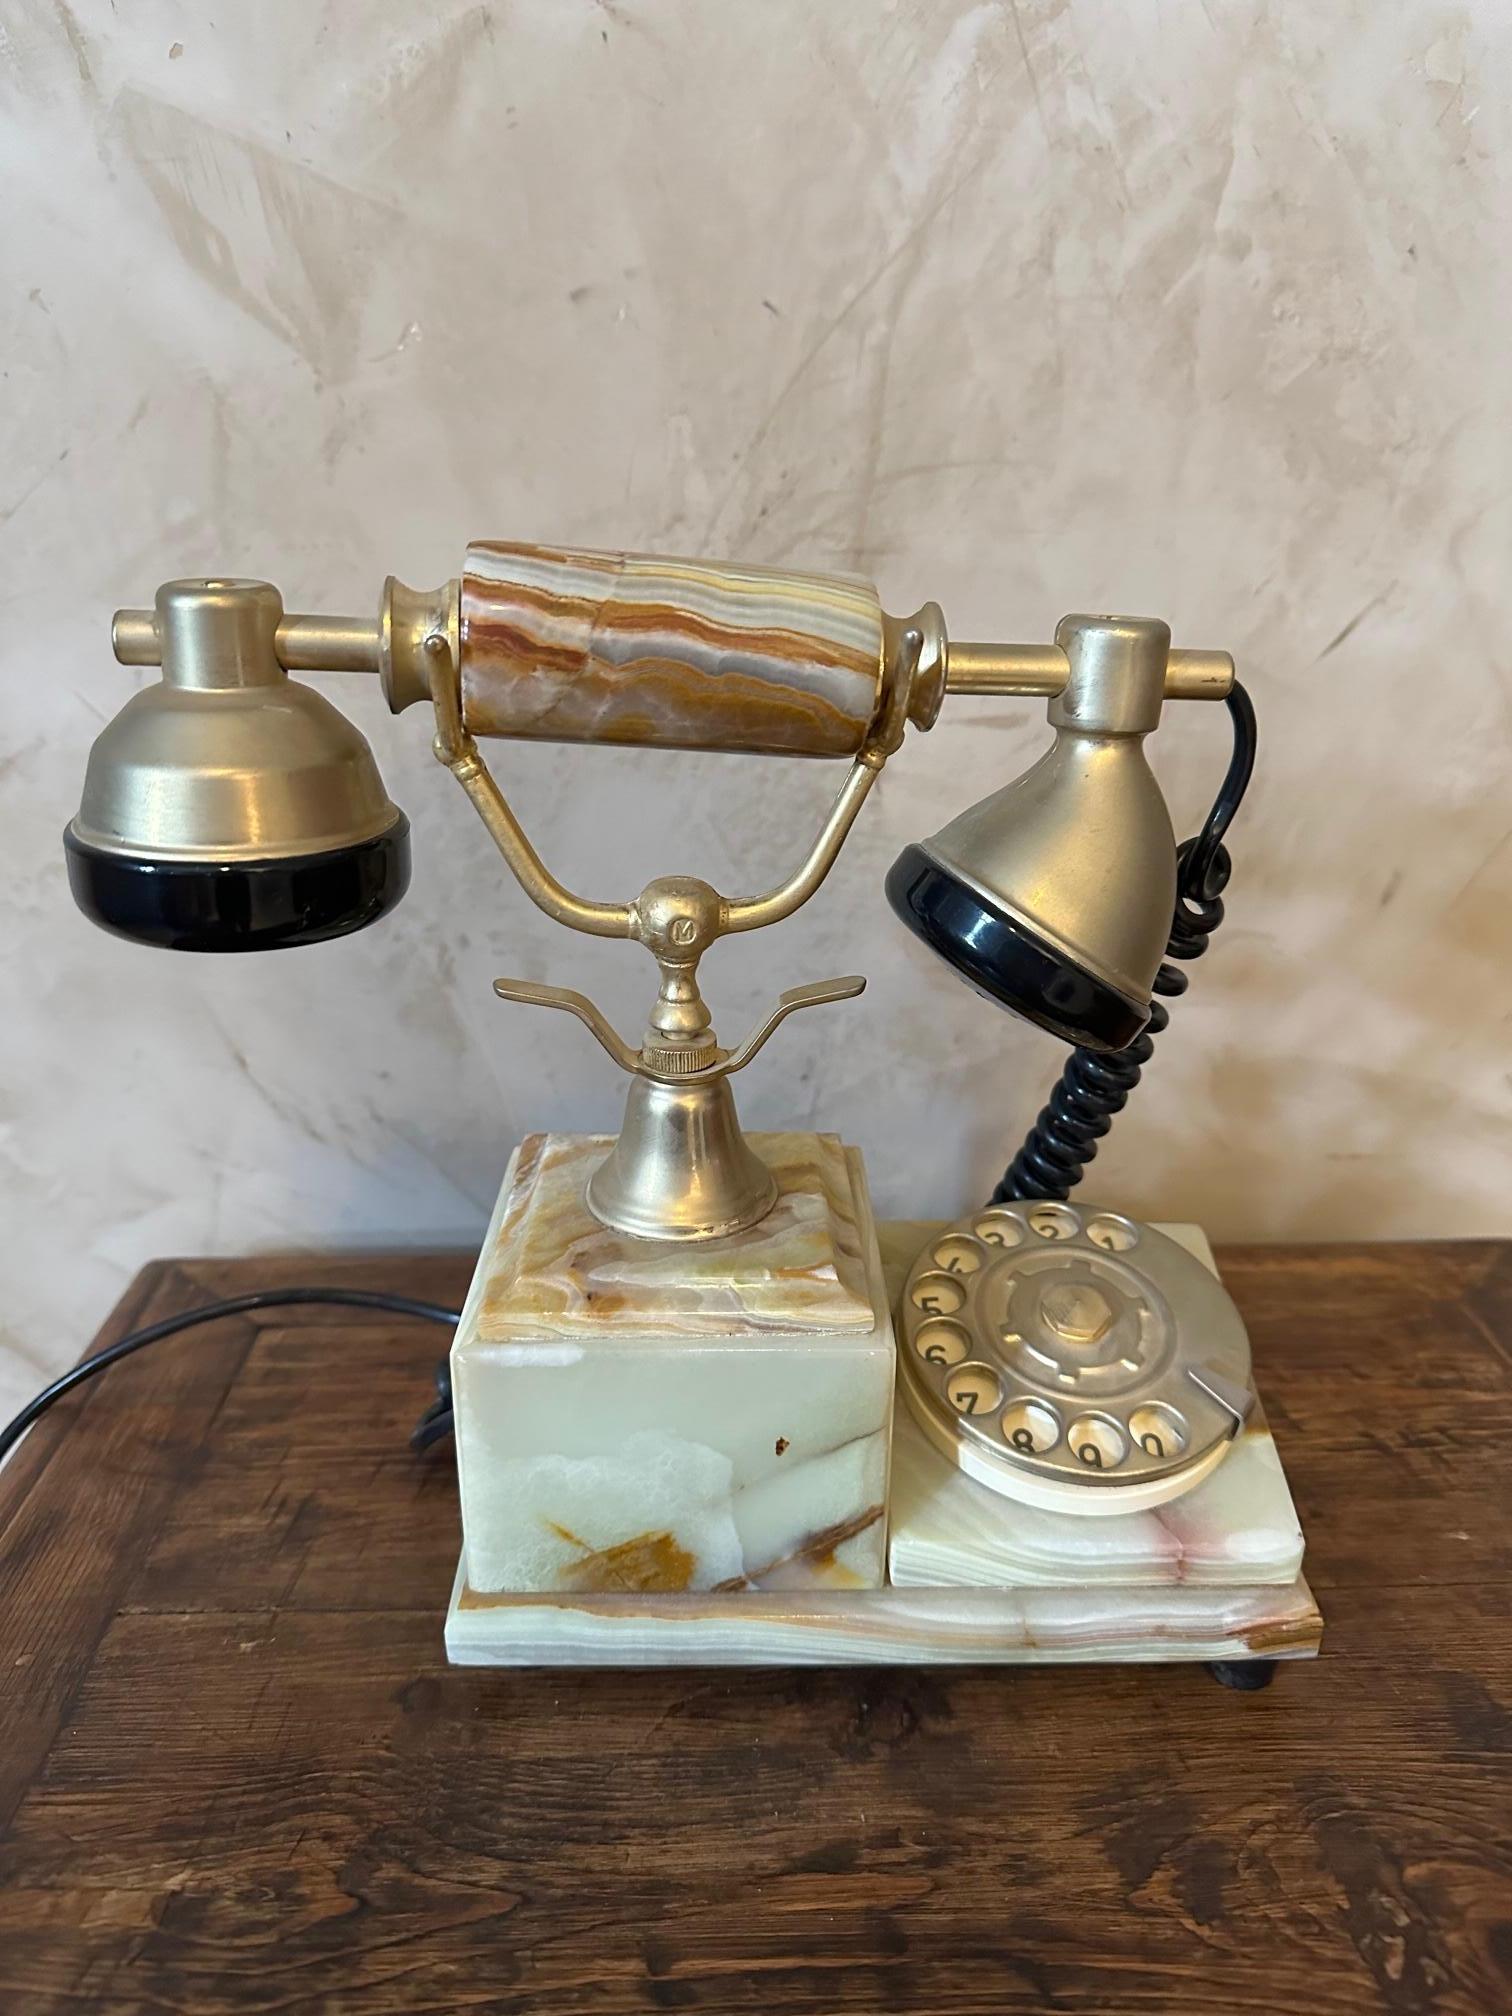 1960s phone